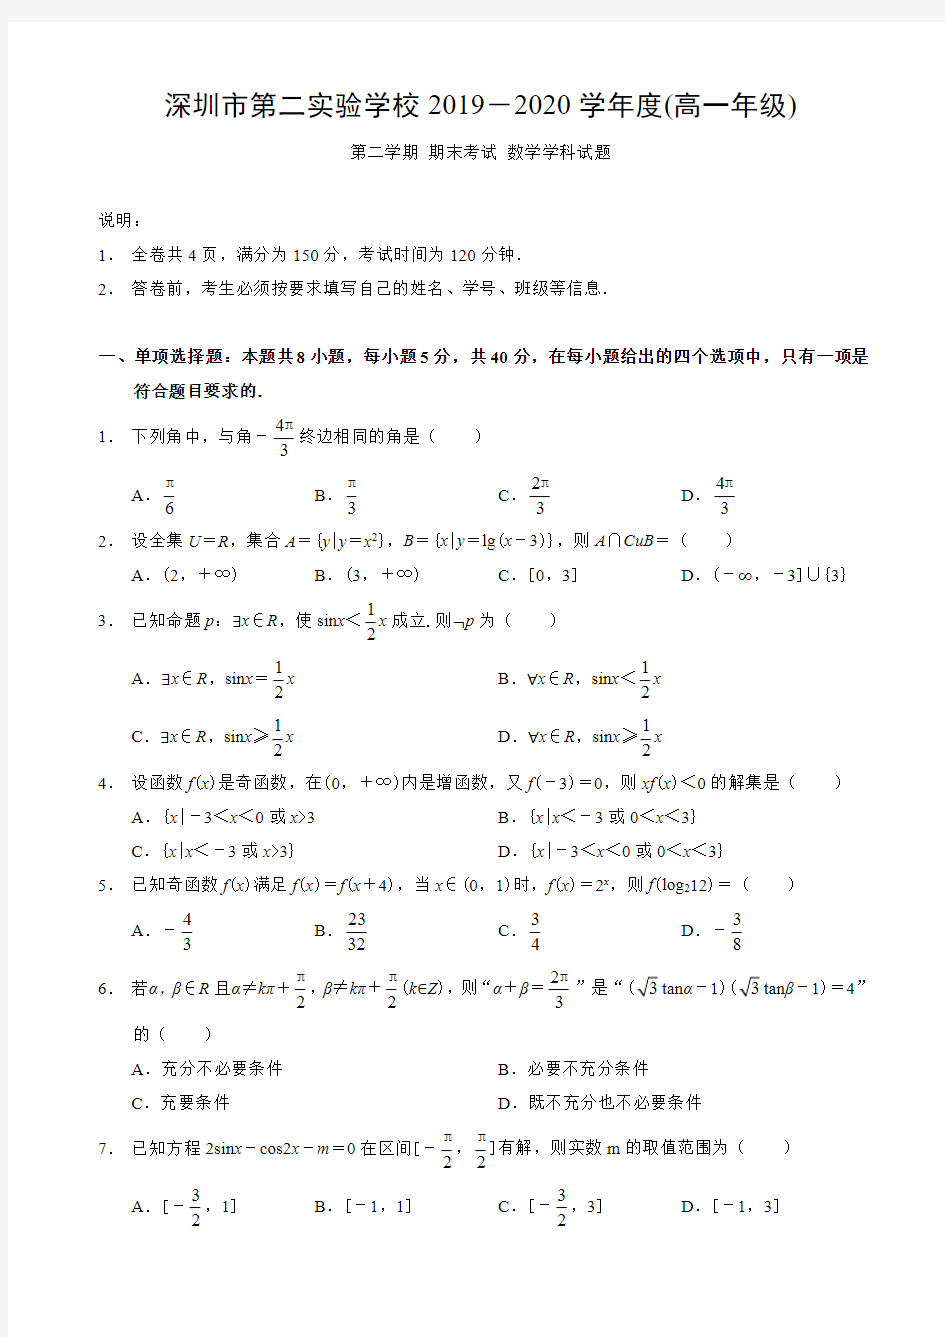 【数学】2019-2020年深圳第二实验高一第一学期期末考试数学试卷